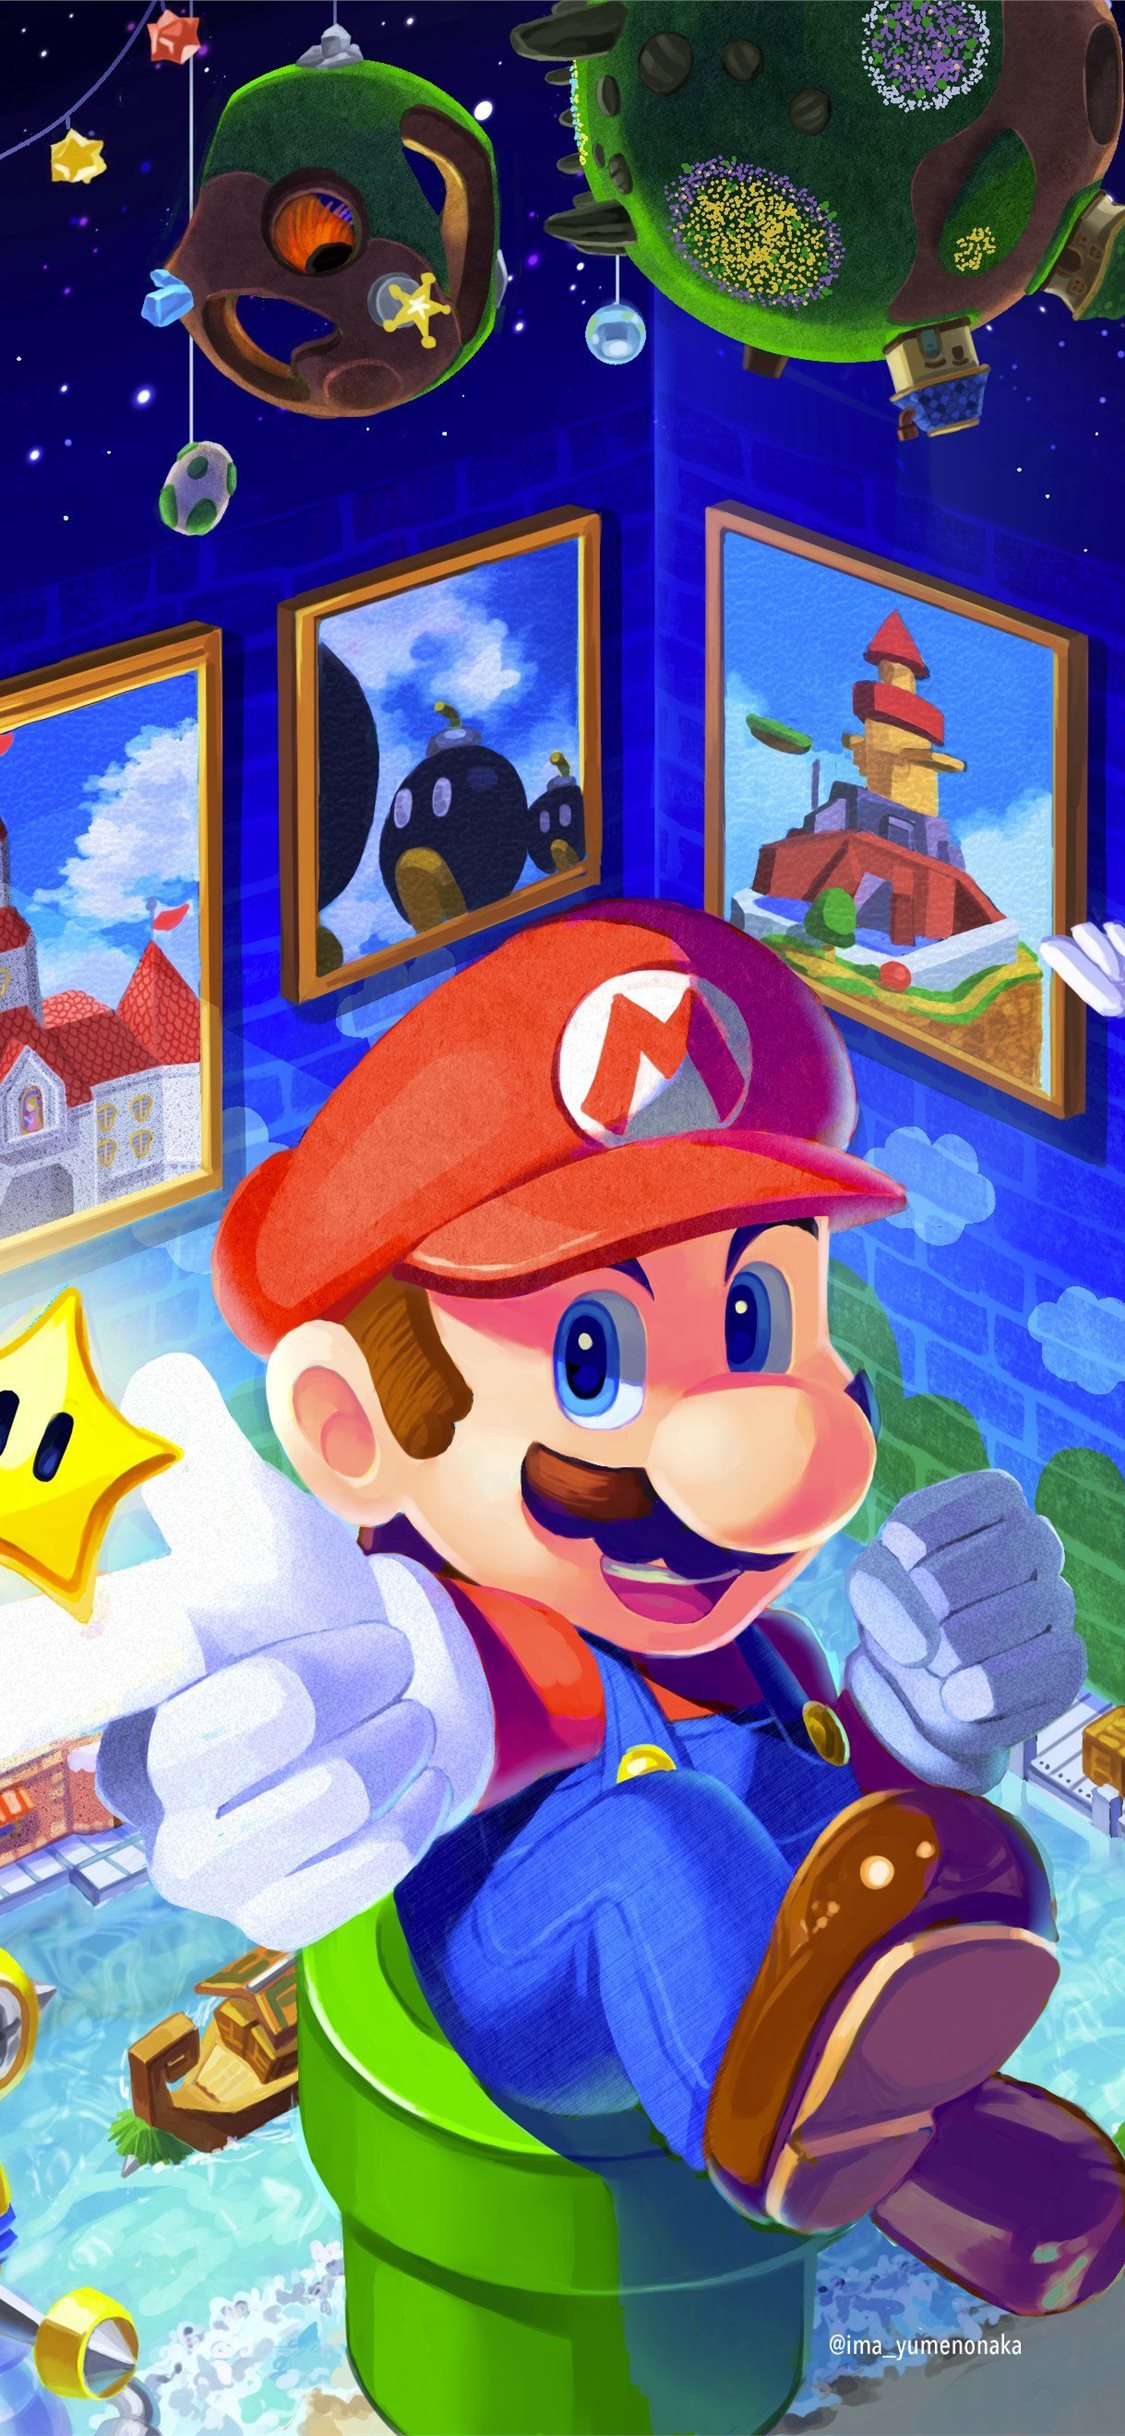 Bạn đang tìm kiếm một hình nền độ phân giải cao, chất lượng Super Mario Galaxy? Đừng bỏ lỡ những bức ảnh đẹp và sống động với đủ các chủ đề trong game được thiết kế với đầy tình cảm. Hãy chọn cho mình bức ảnh ưng ý nhất và cảm nhận ngay cảm xúc trong game Super Mario Galaxy.